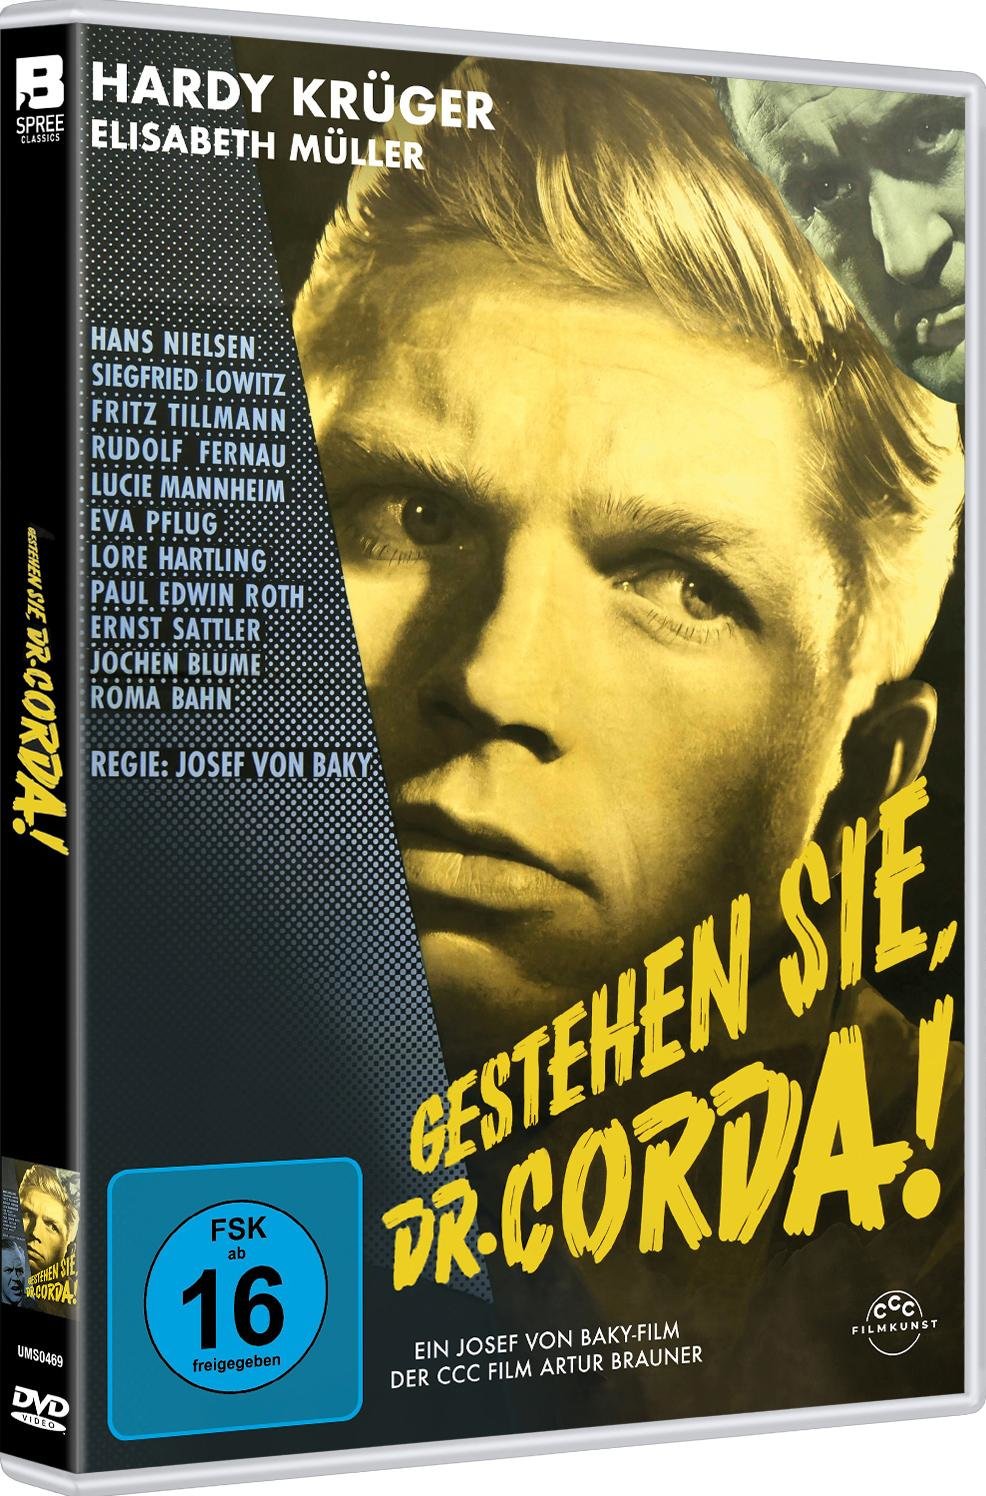 Gestehen Sie, Dr. Corda - Original Kinofassung (digital remastered)  (DVD)